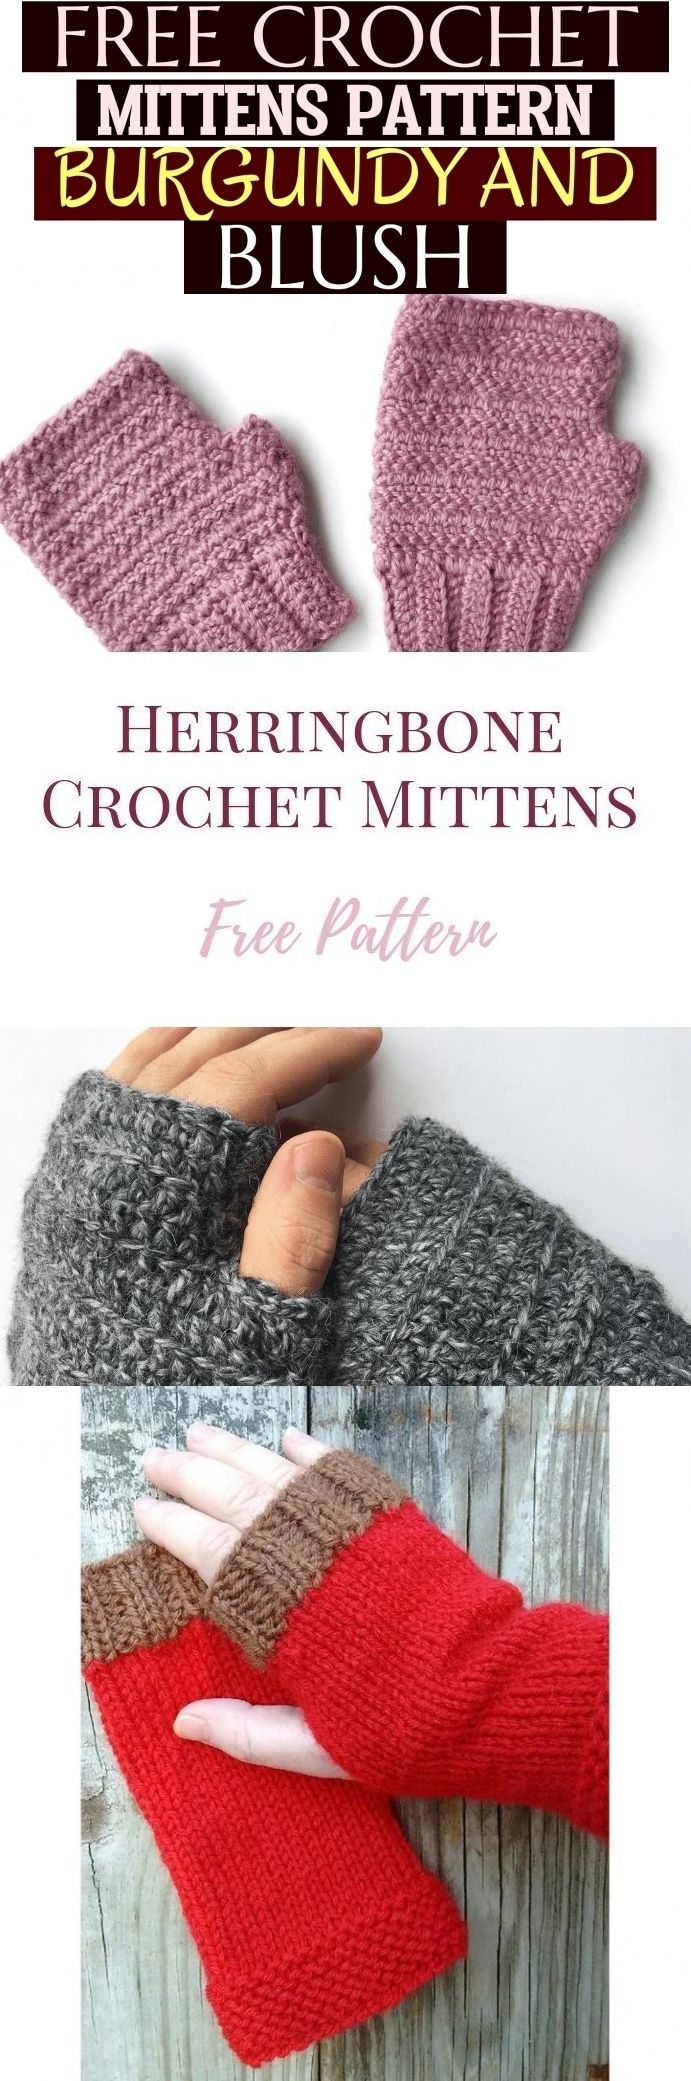 Free Crochet Mittens Pattern - Burgundy And Blush ! häkeln fäustlinge muster -...